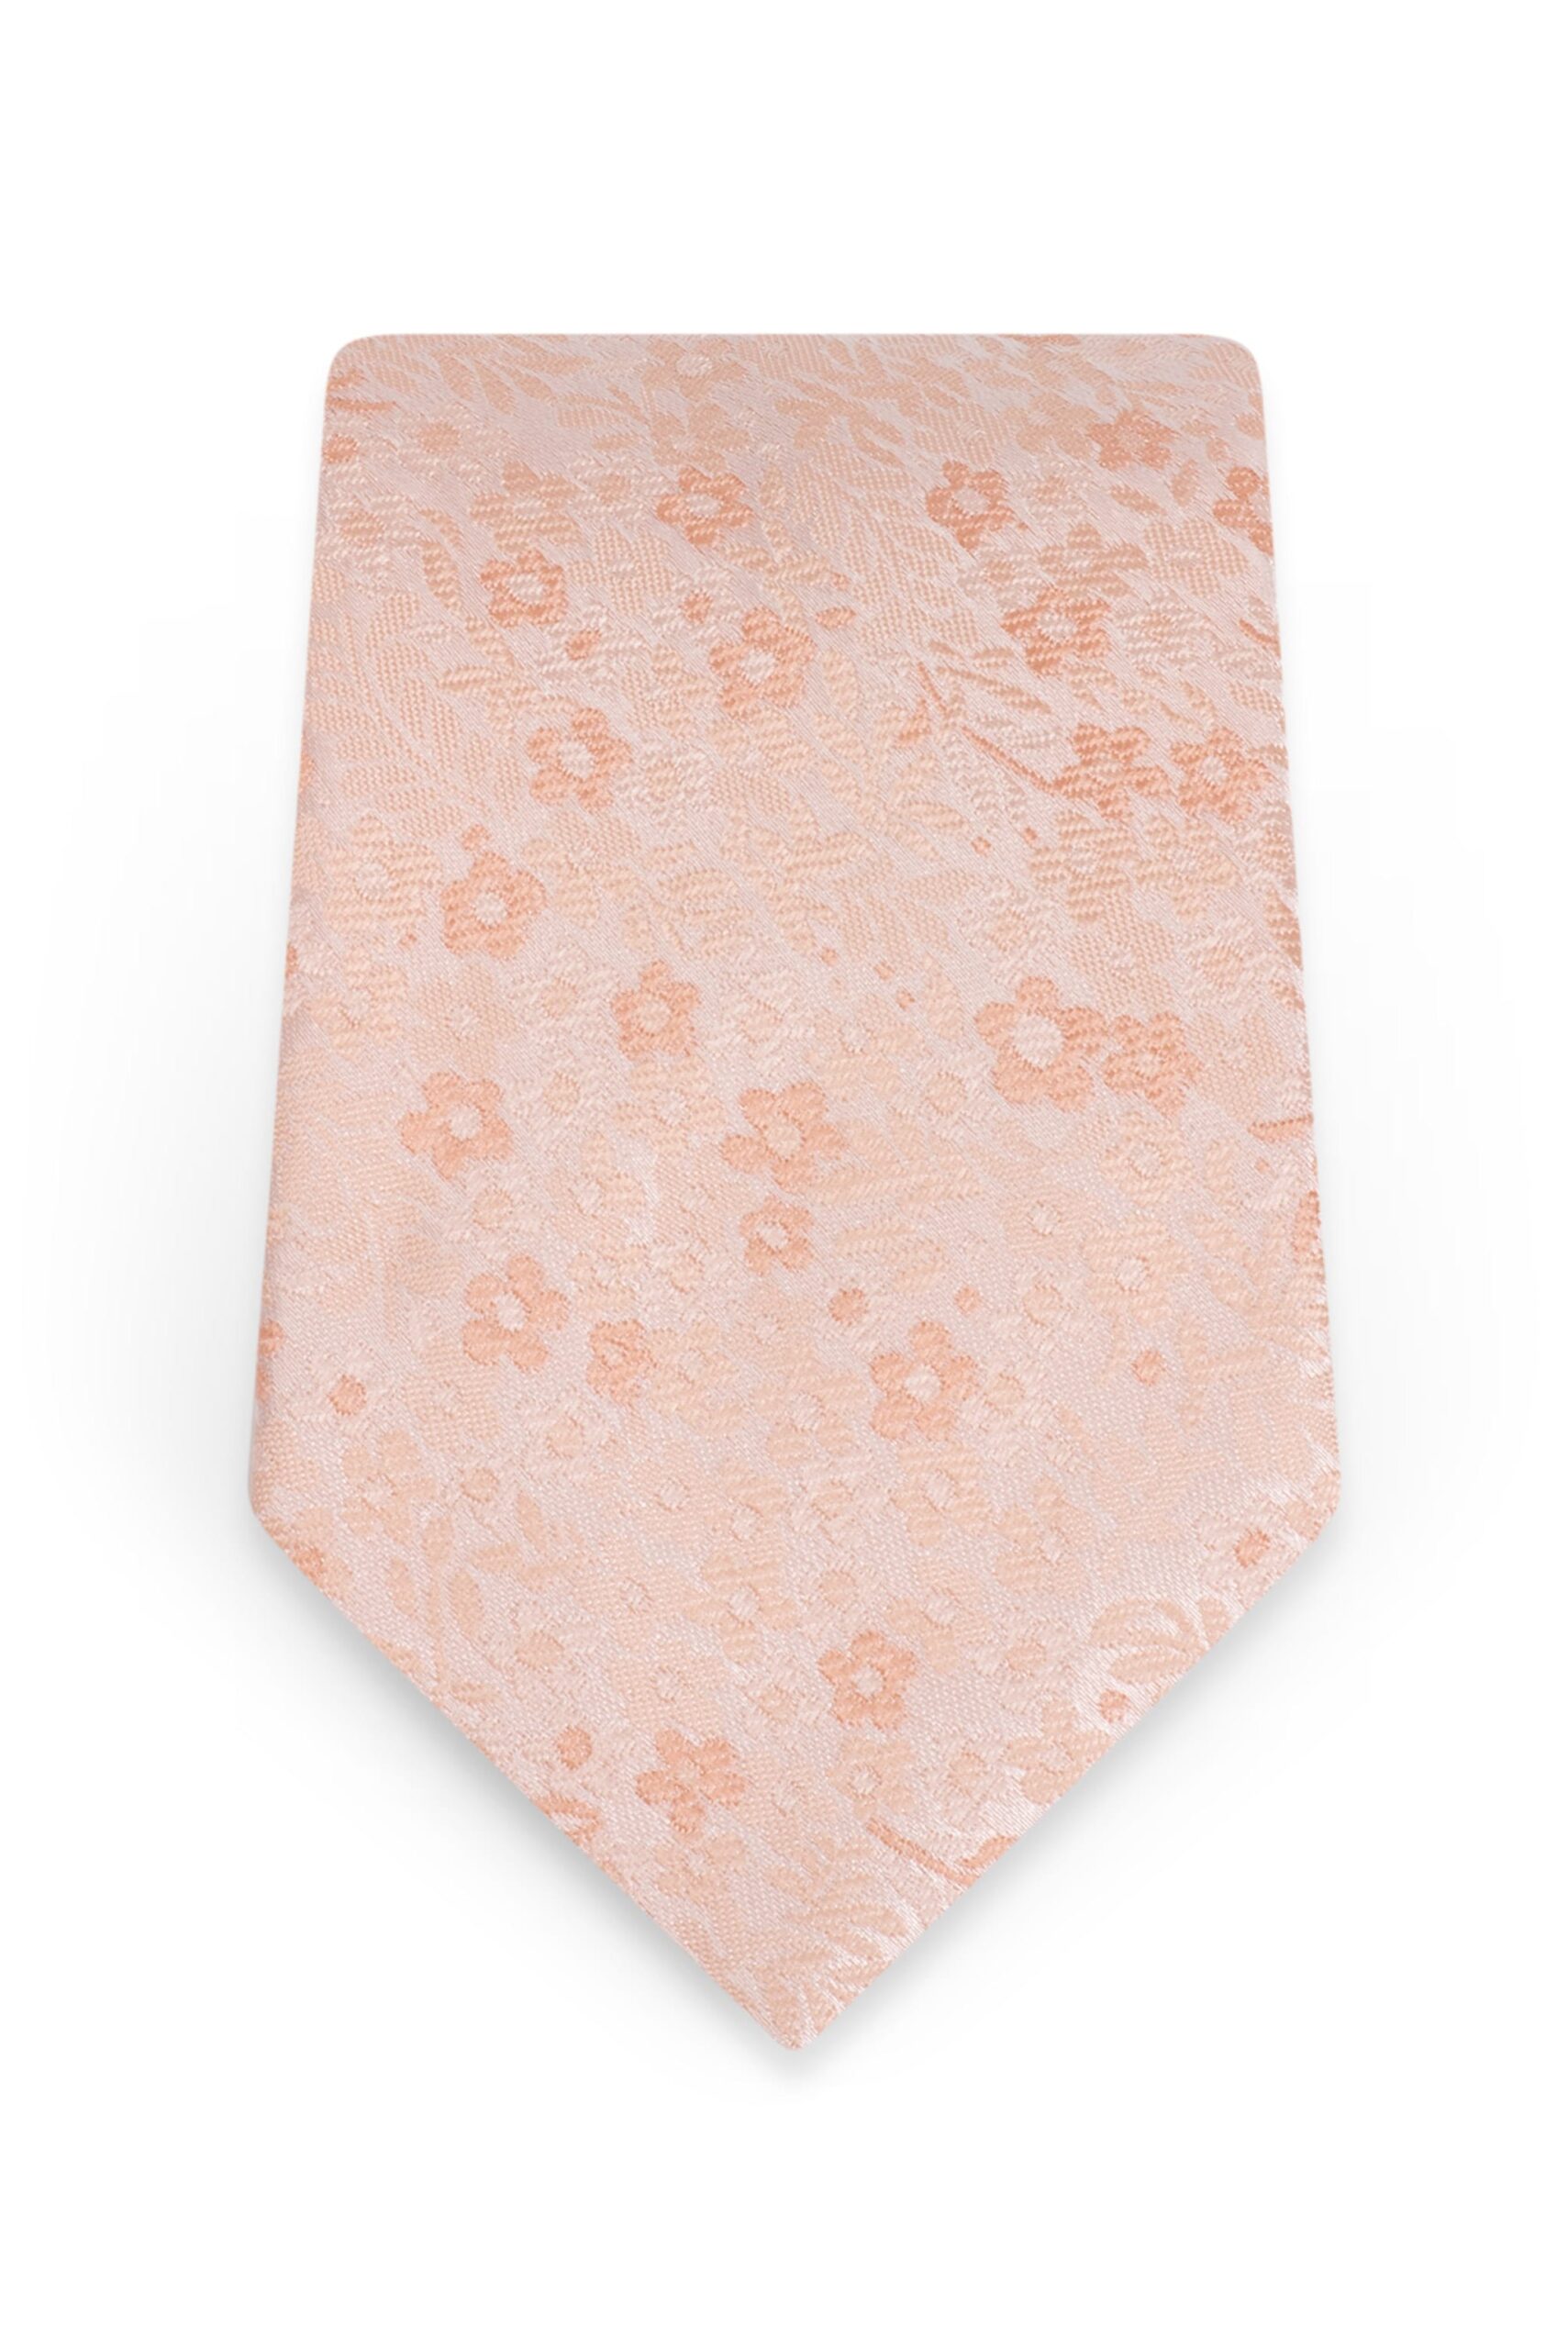 Floral Bellini Self-Tie Windsor Tie